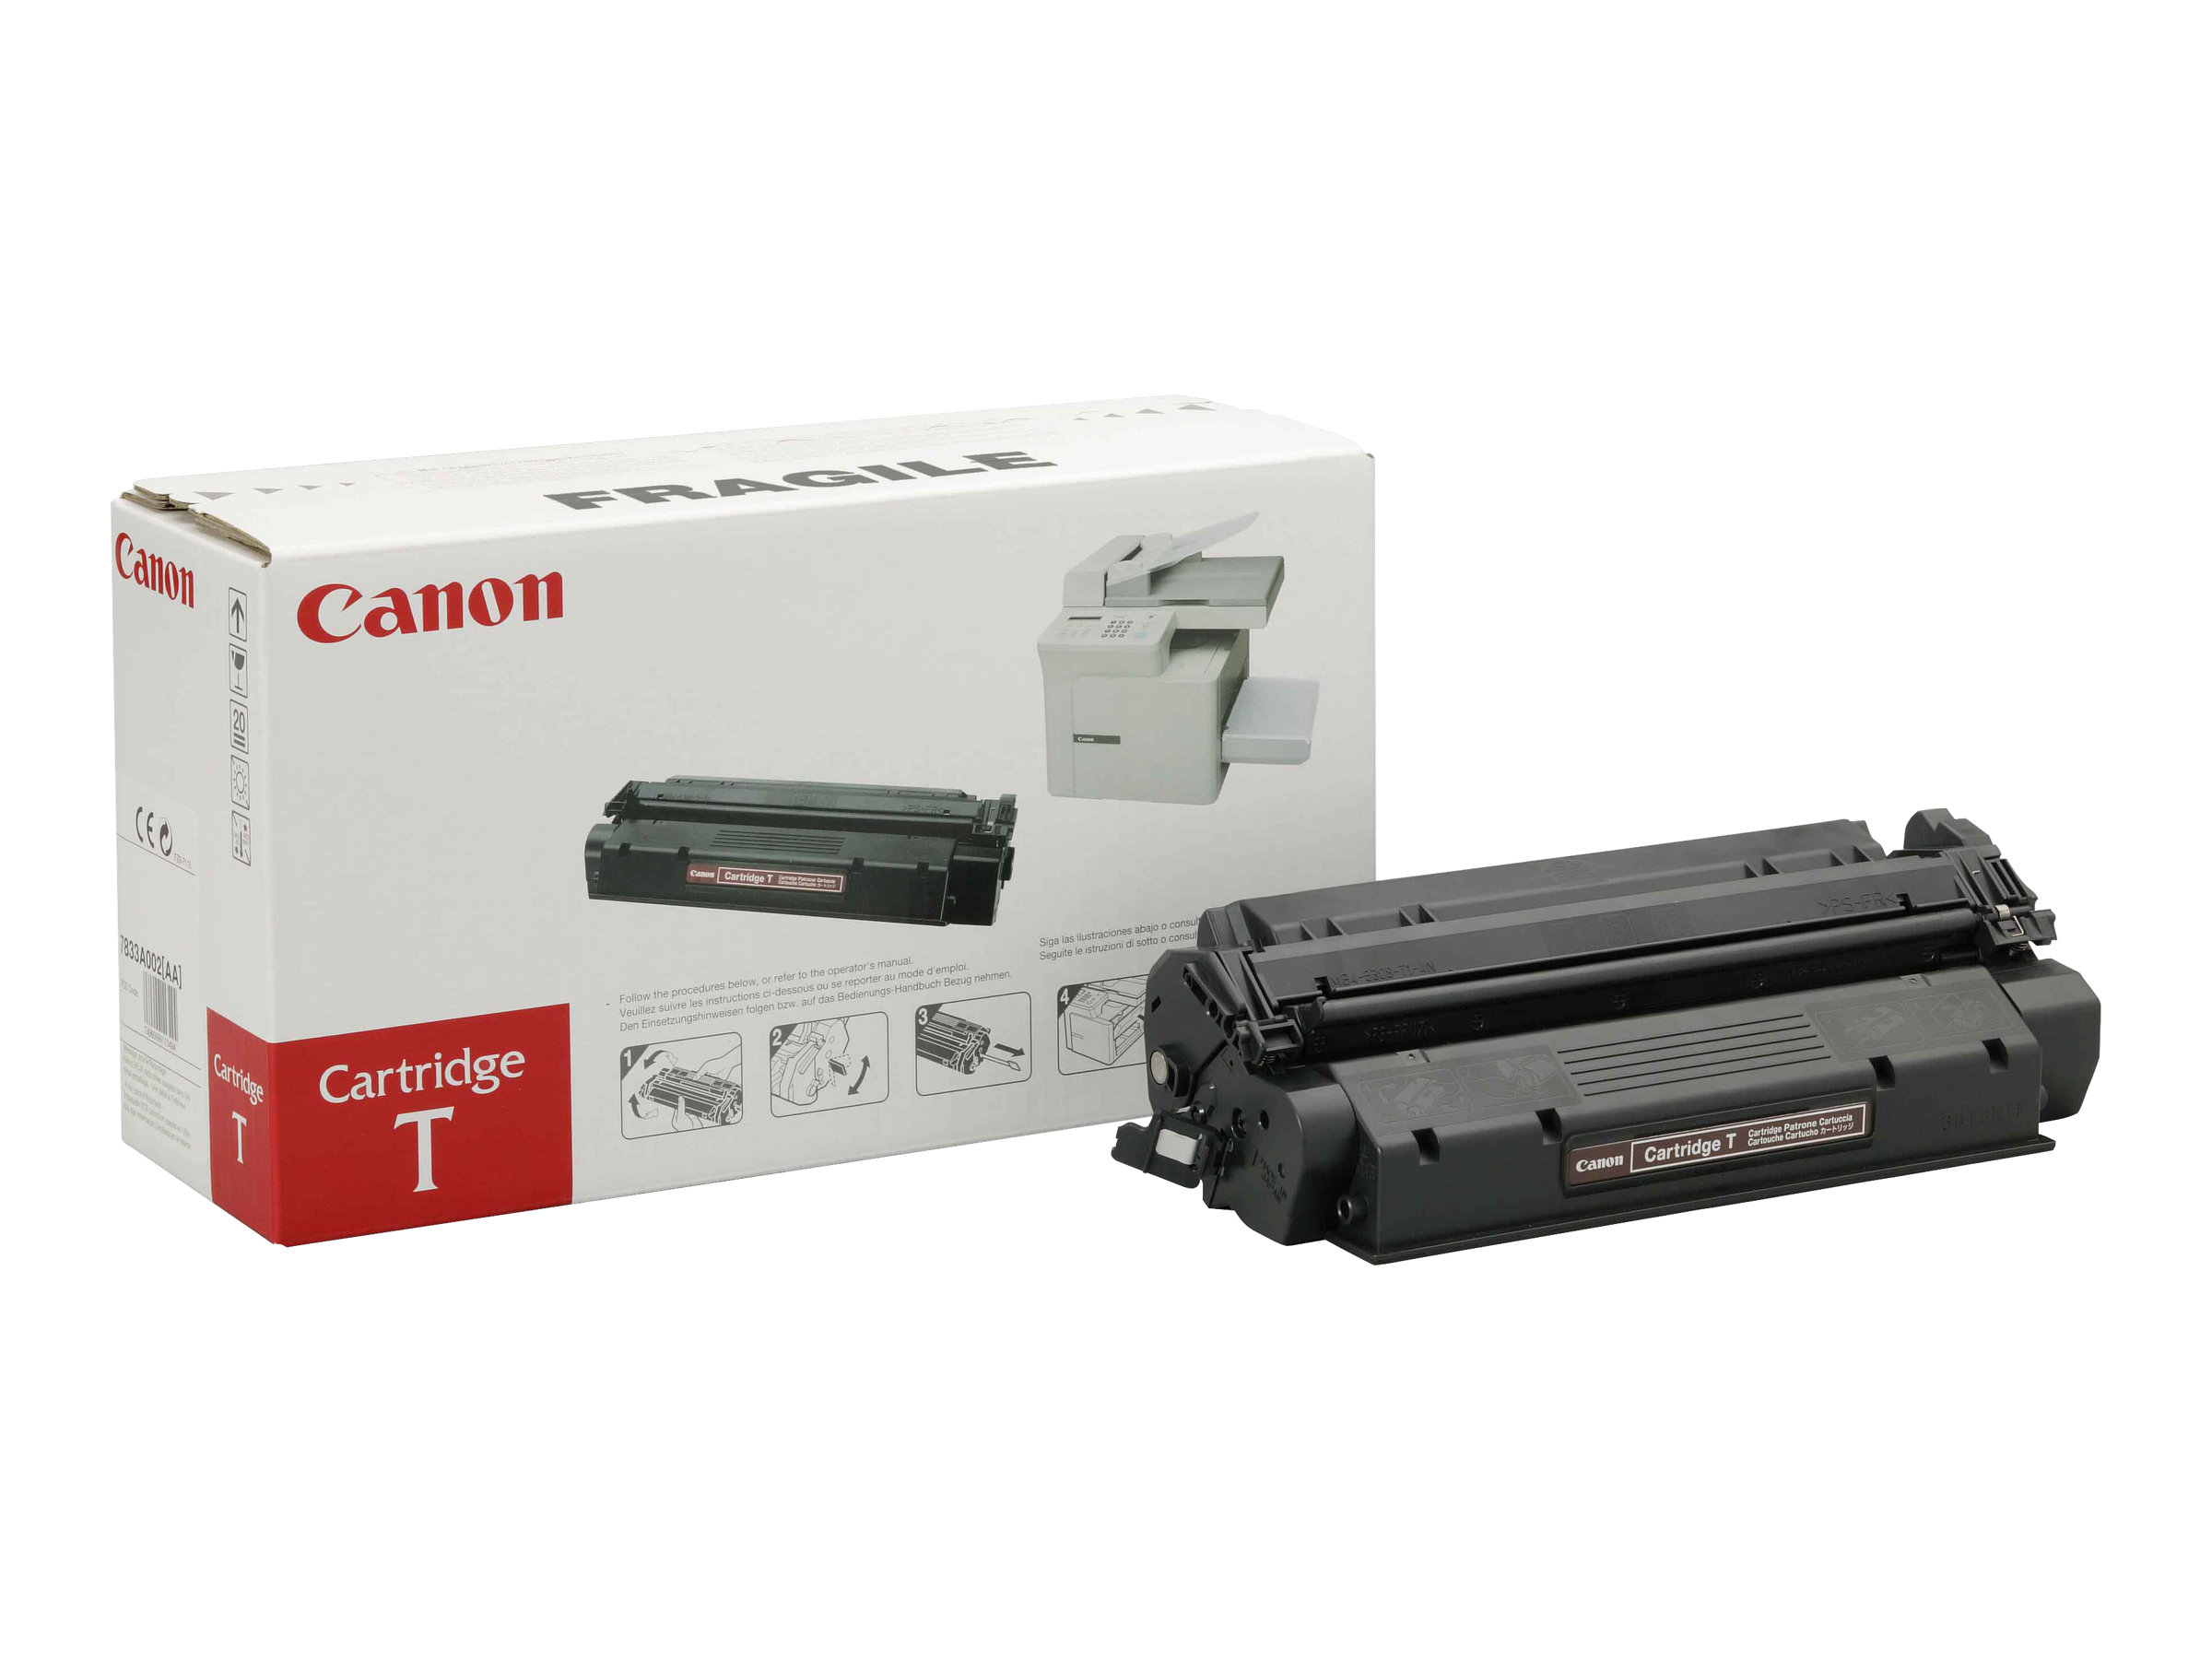 Canon T - Schwarz - Original - Schwarz - Tonerpatrone -  für FAX L380 - L380S - L390 - L400; ImageCLASS D320 - D340; LASER CLASS 310 - 510; PCD320 - D340 - Bulk